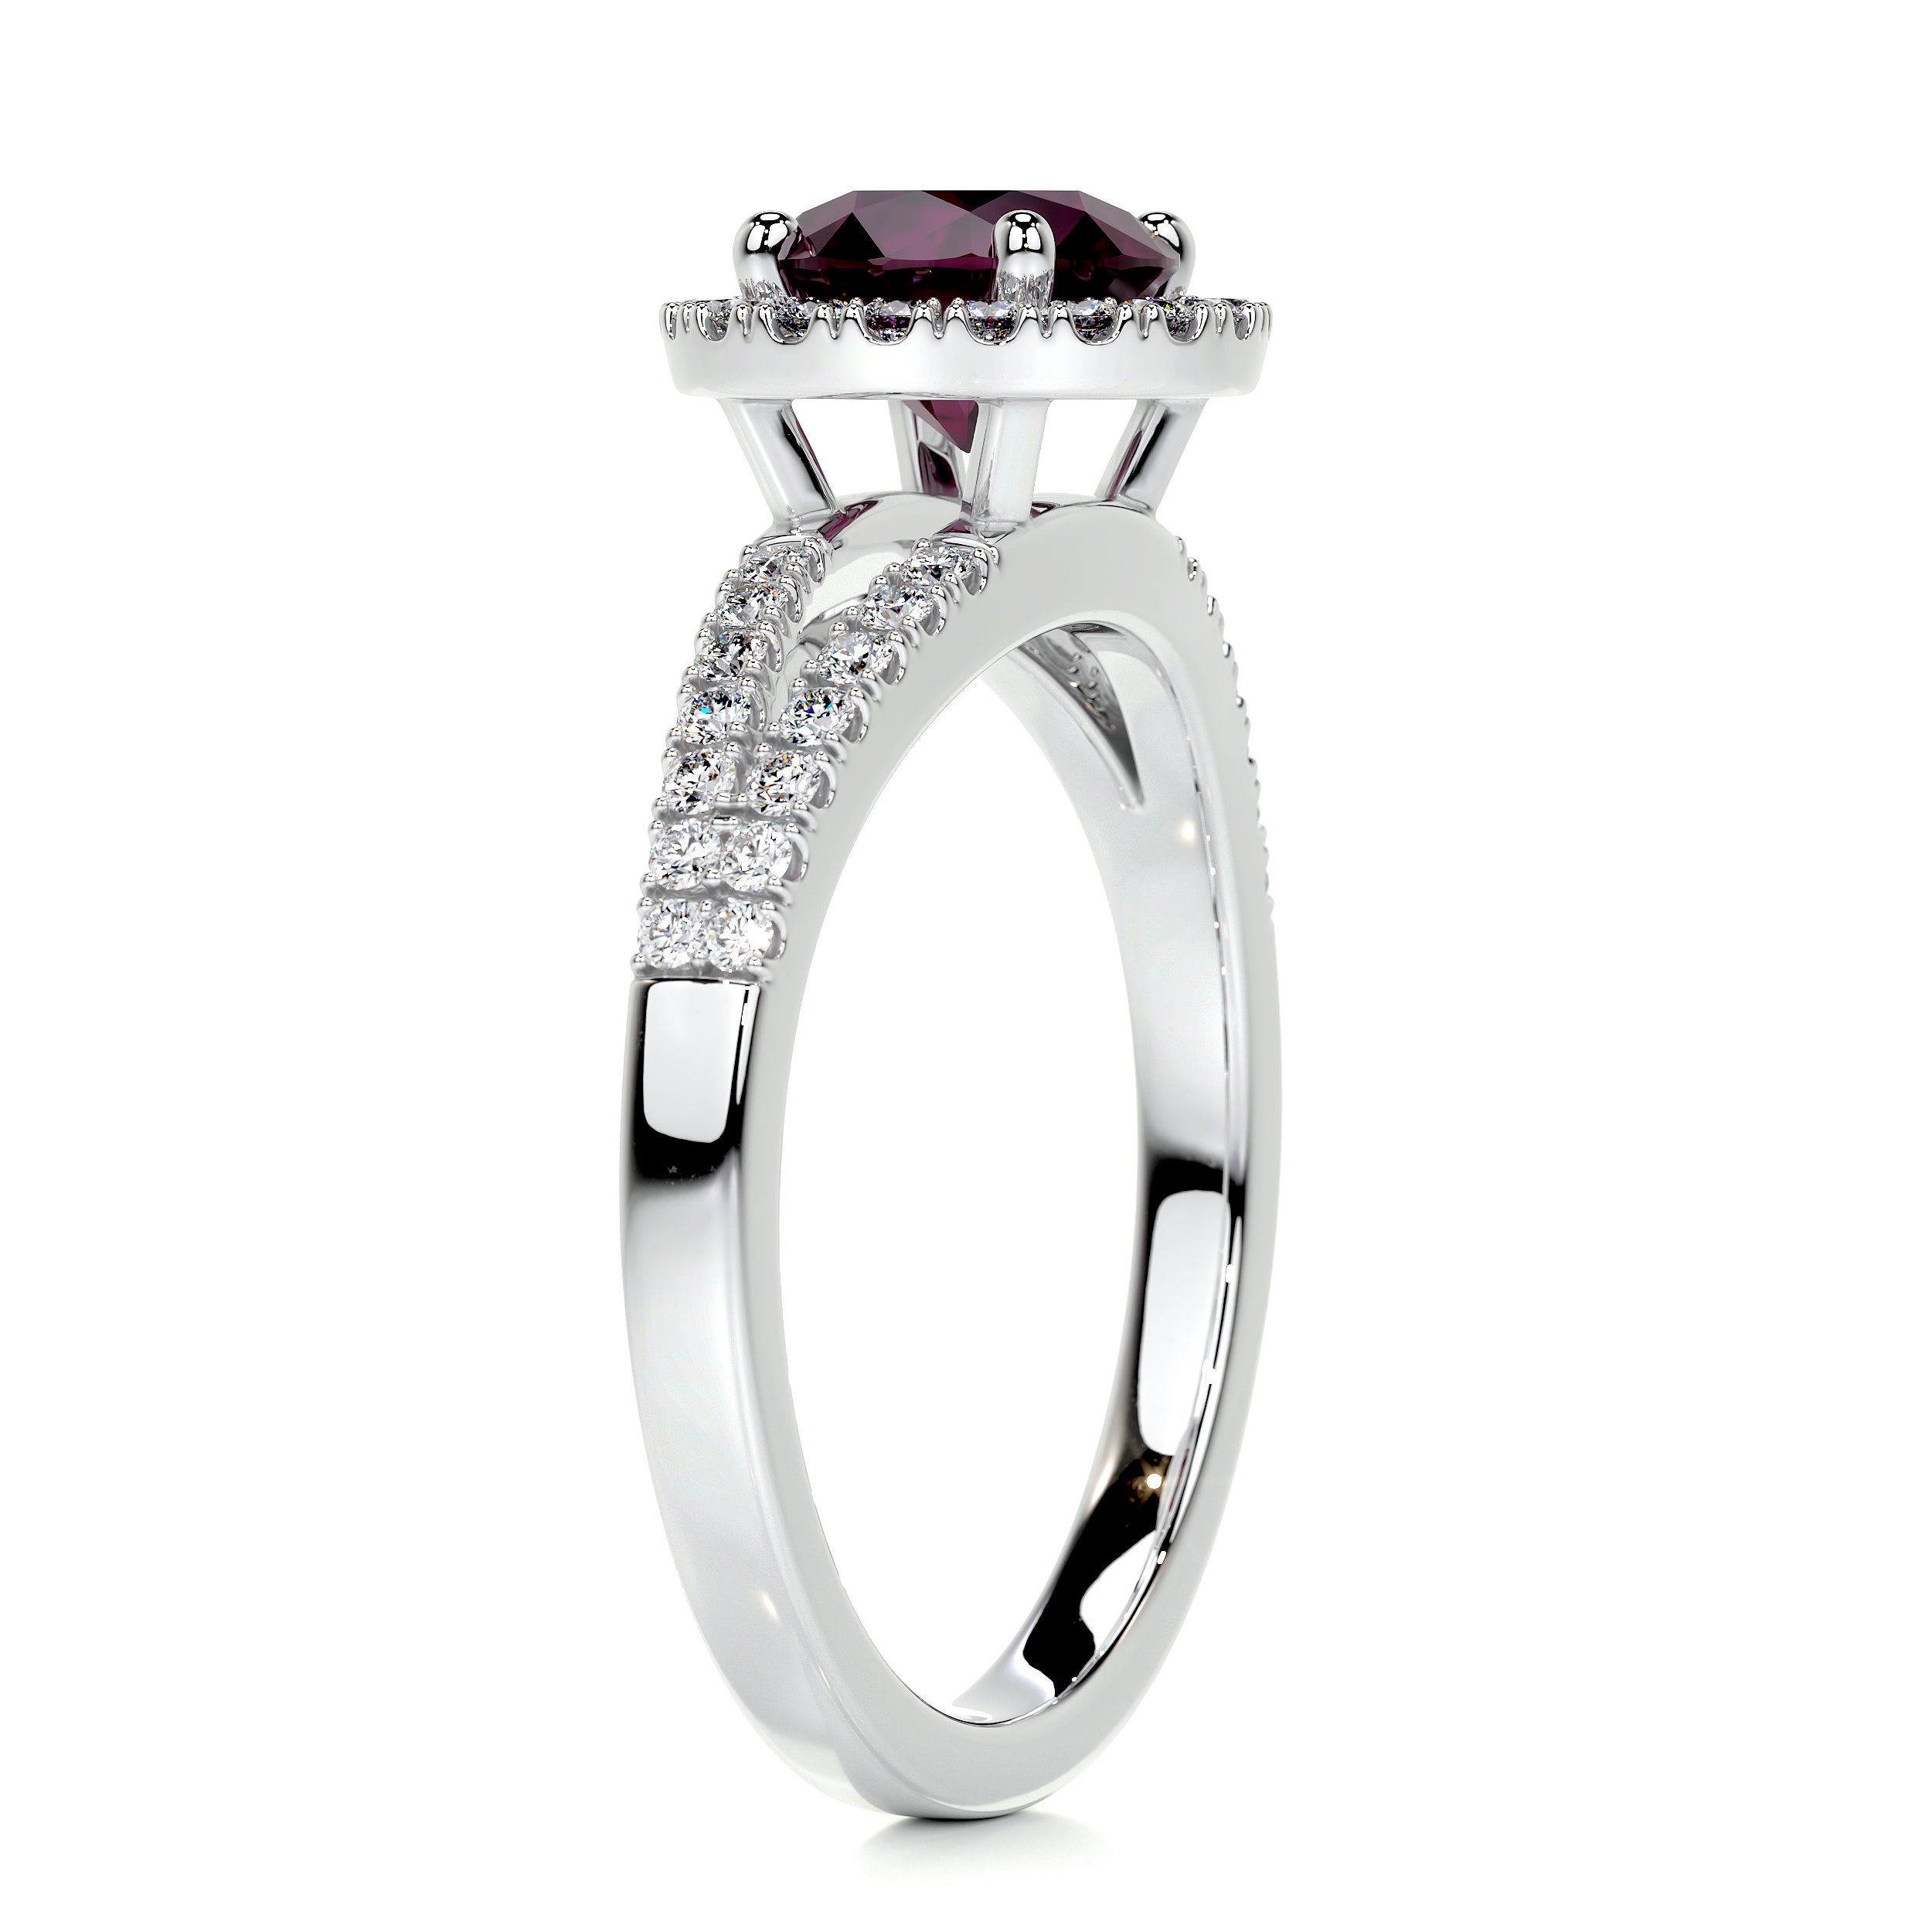 Hazel Gemstone & Diamonds Ring   (1.25 Carat) -18K White Gold